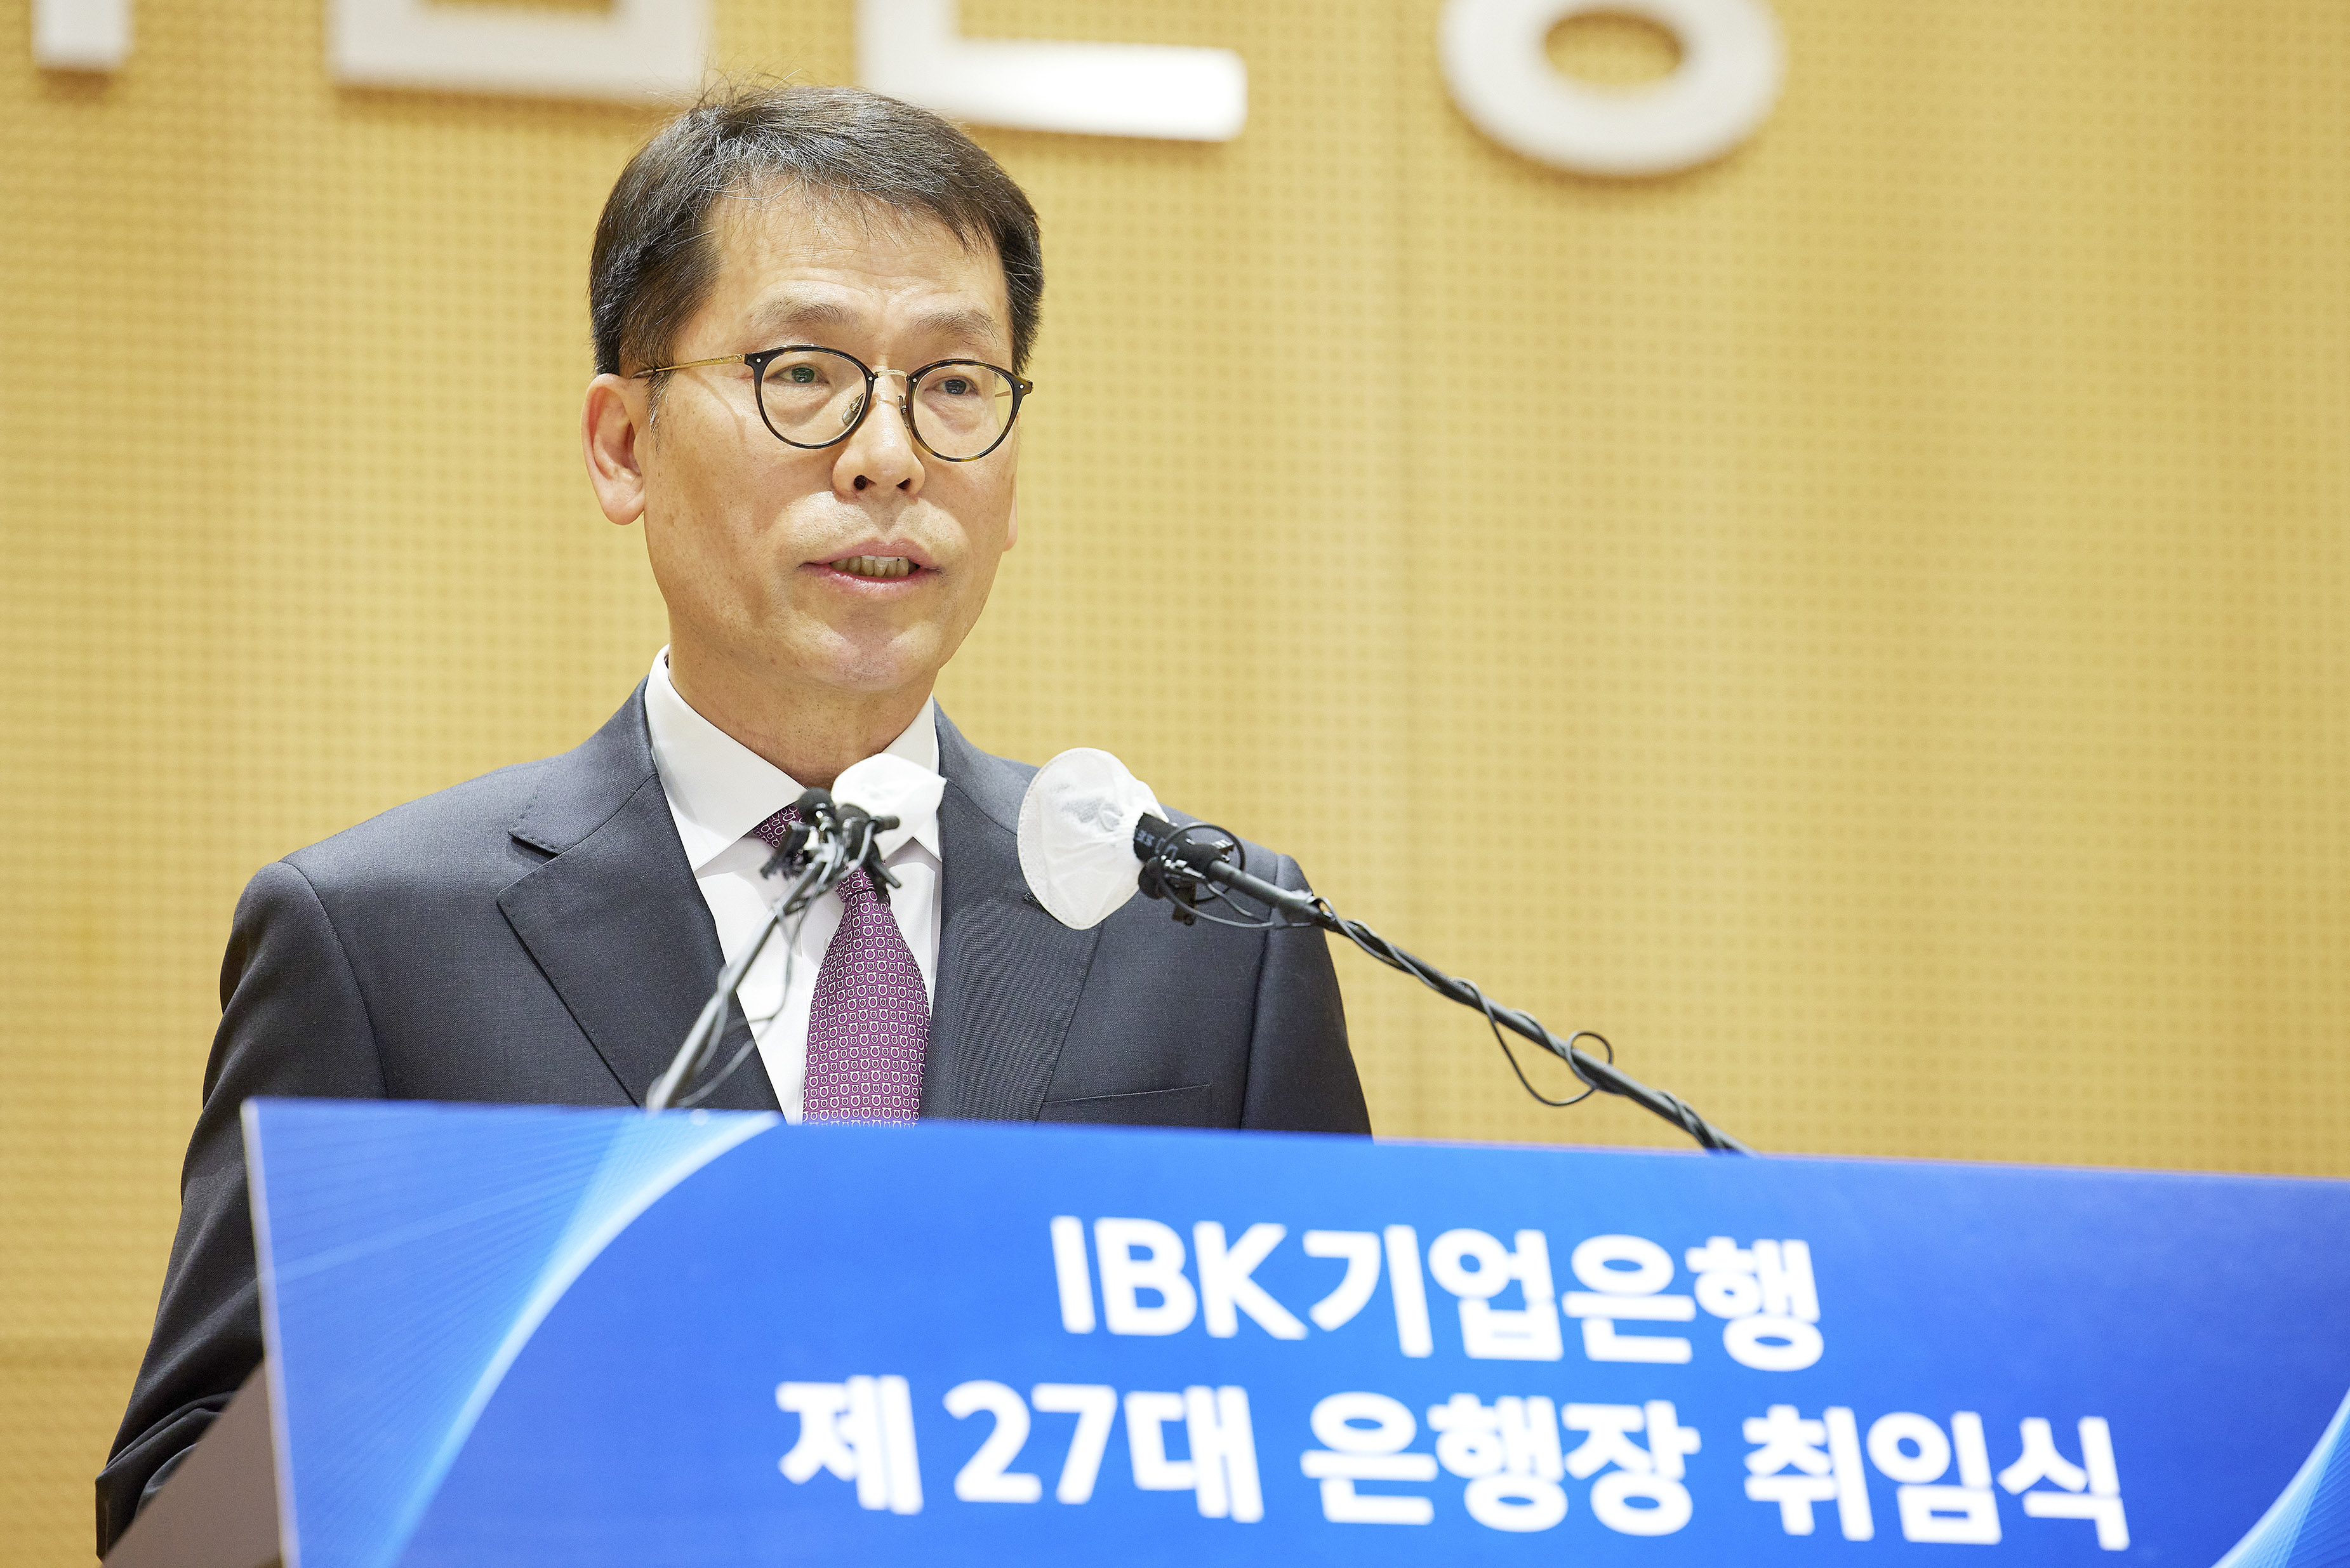 김성태 신임 IBK기업은행장이 3일 서울 중구 을지로 본점에서 열린 취임식에서 취임사를 밝히고 있다.